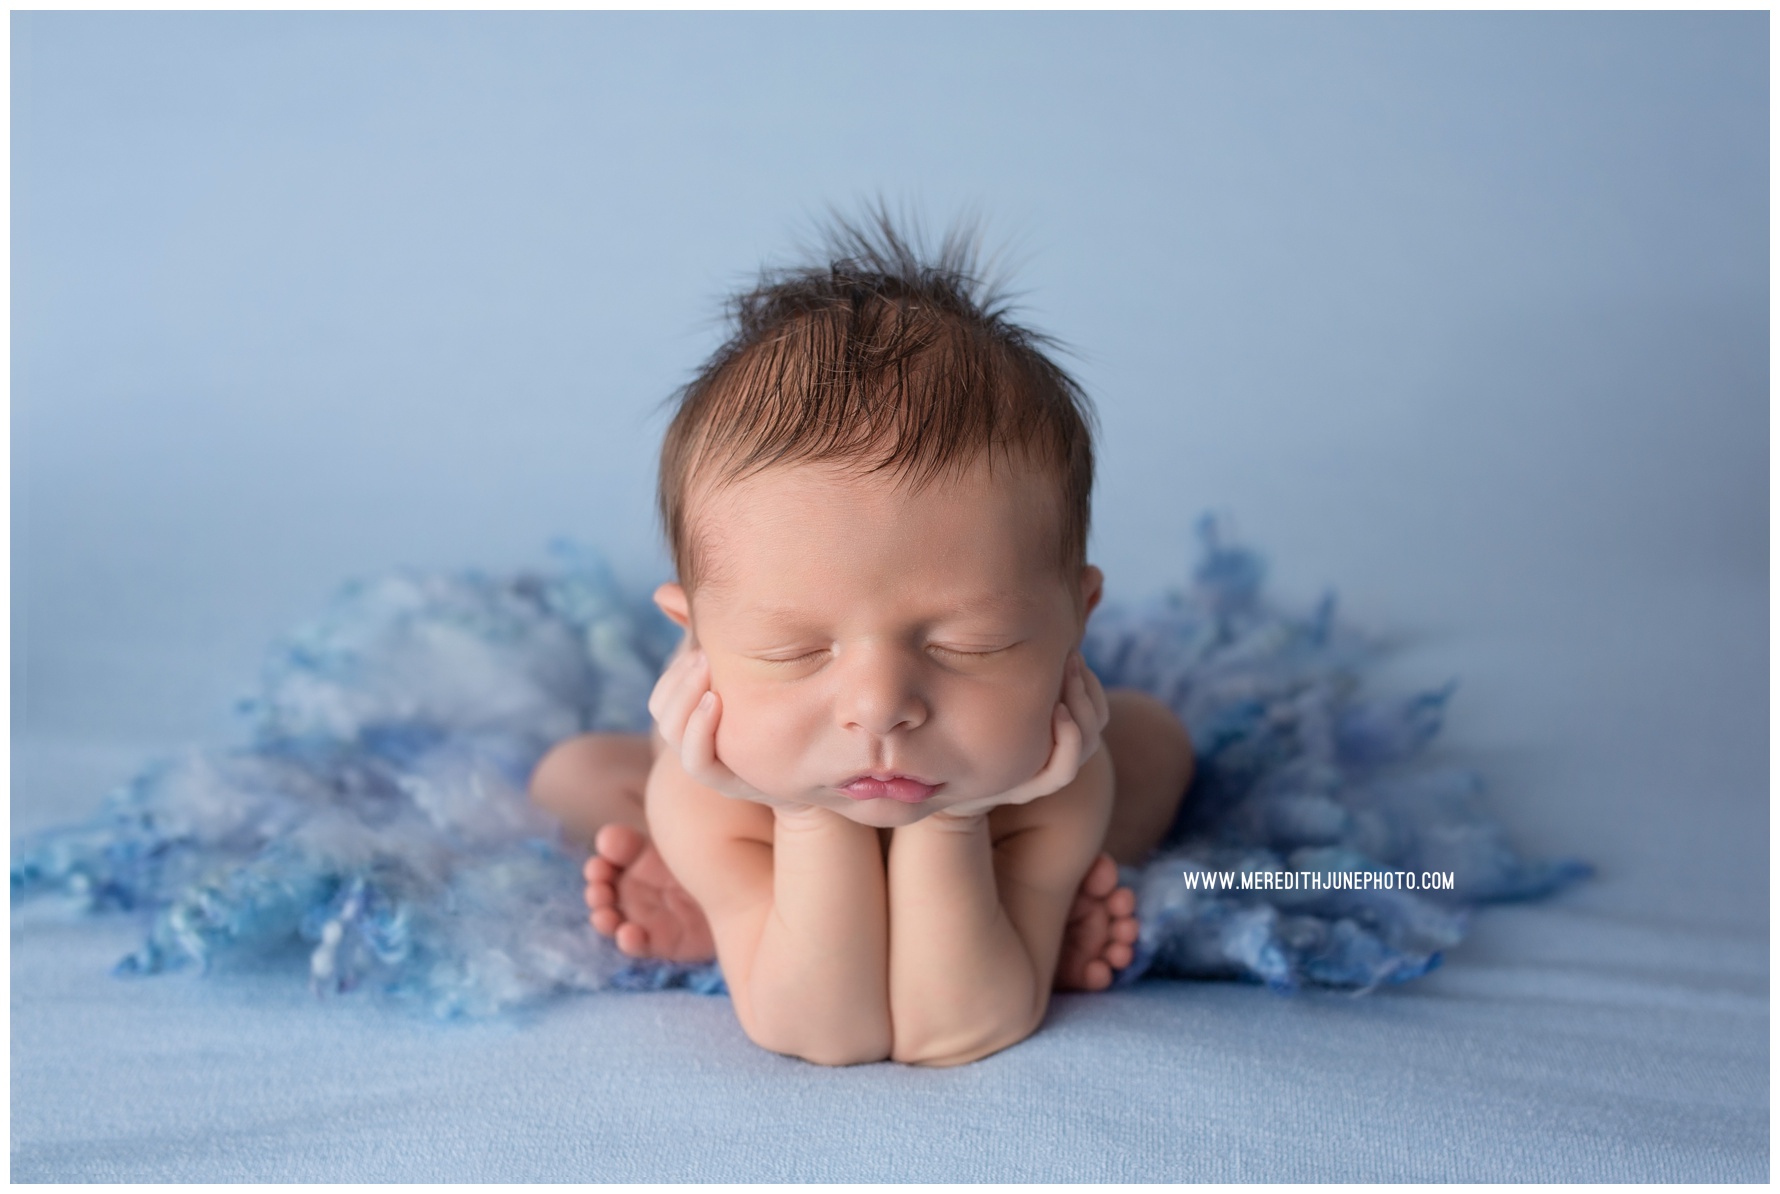 Charlotte-Newborn-Baby-Photographer